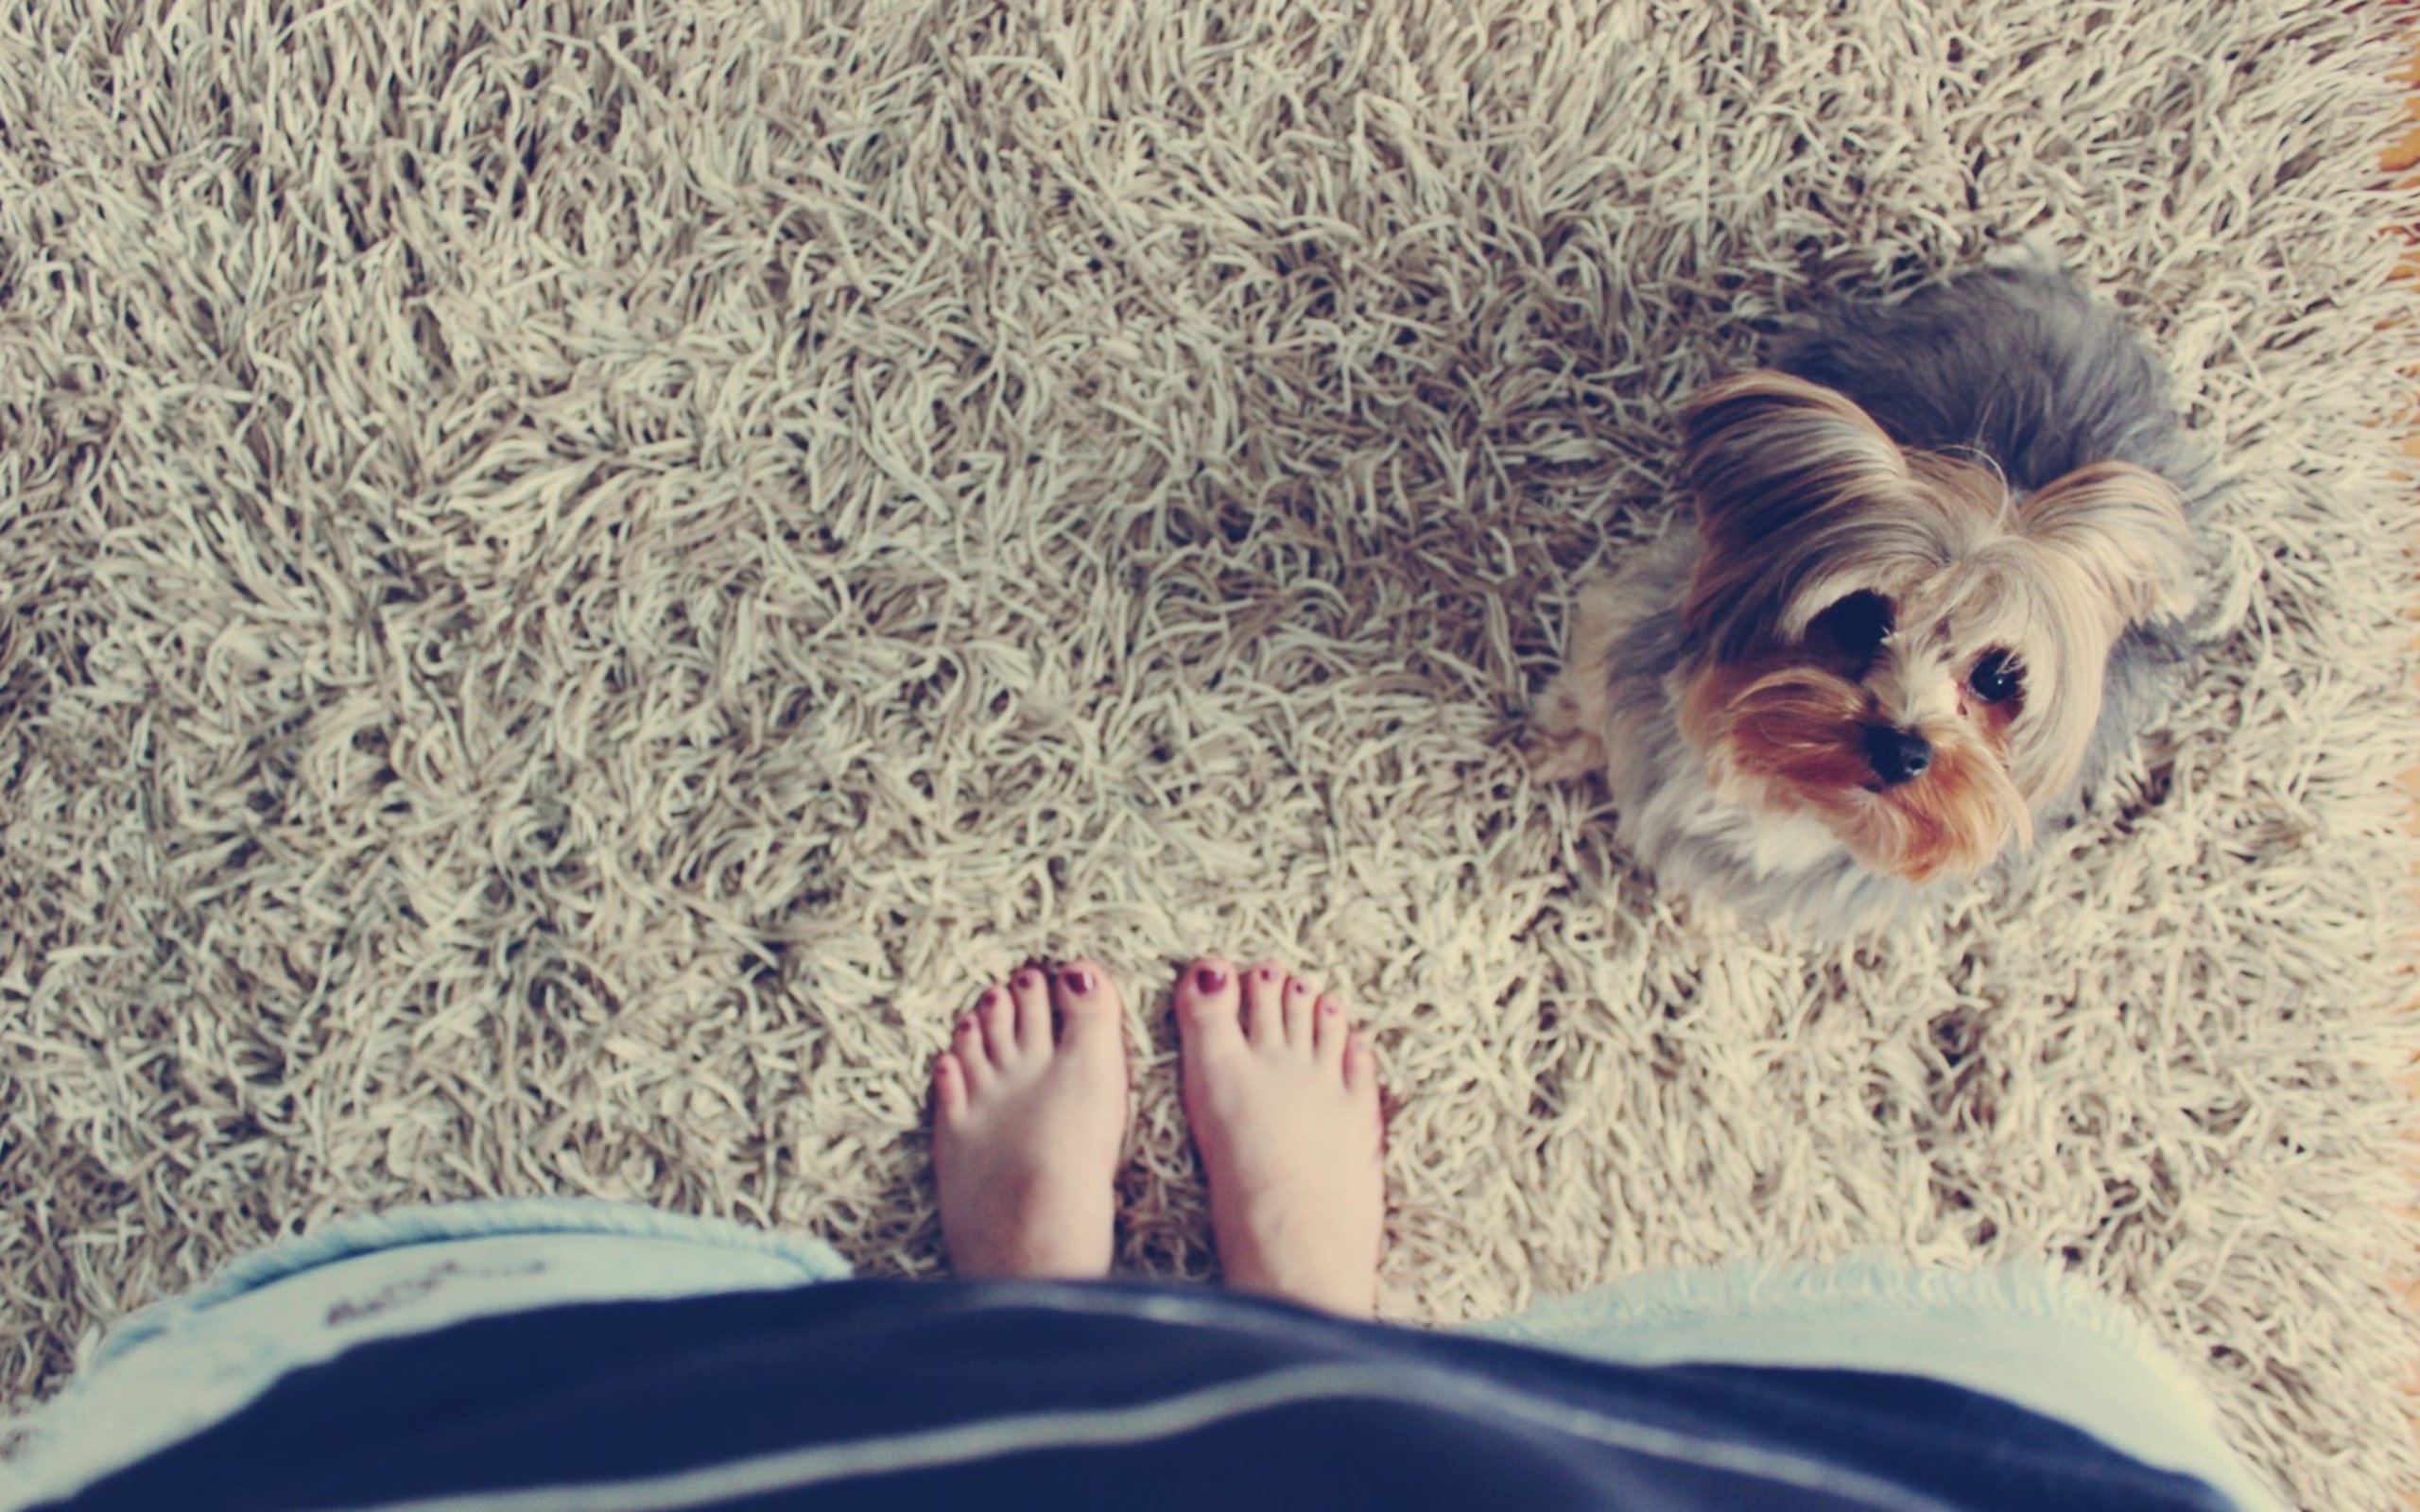 Feet dog. Собака на ковре. Блондинка с Йорком. Щенок на ковре. Босиком на ковре.